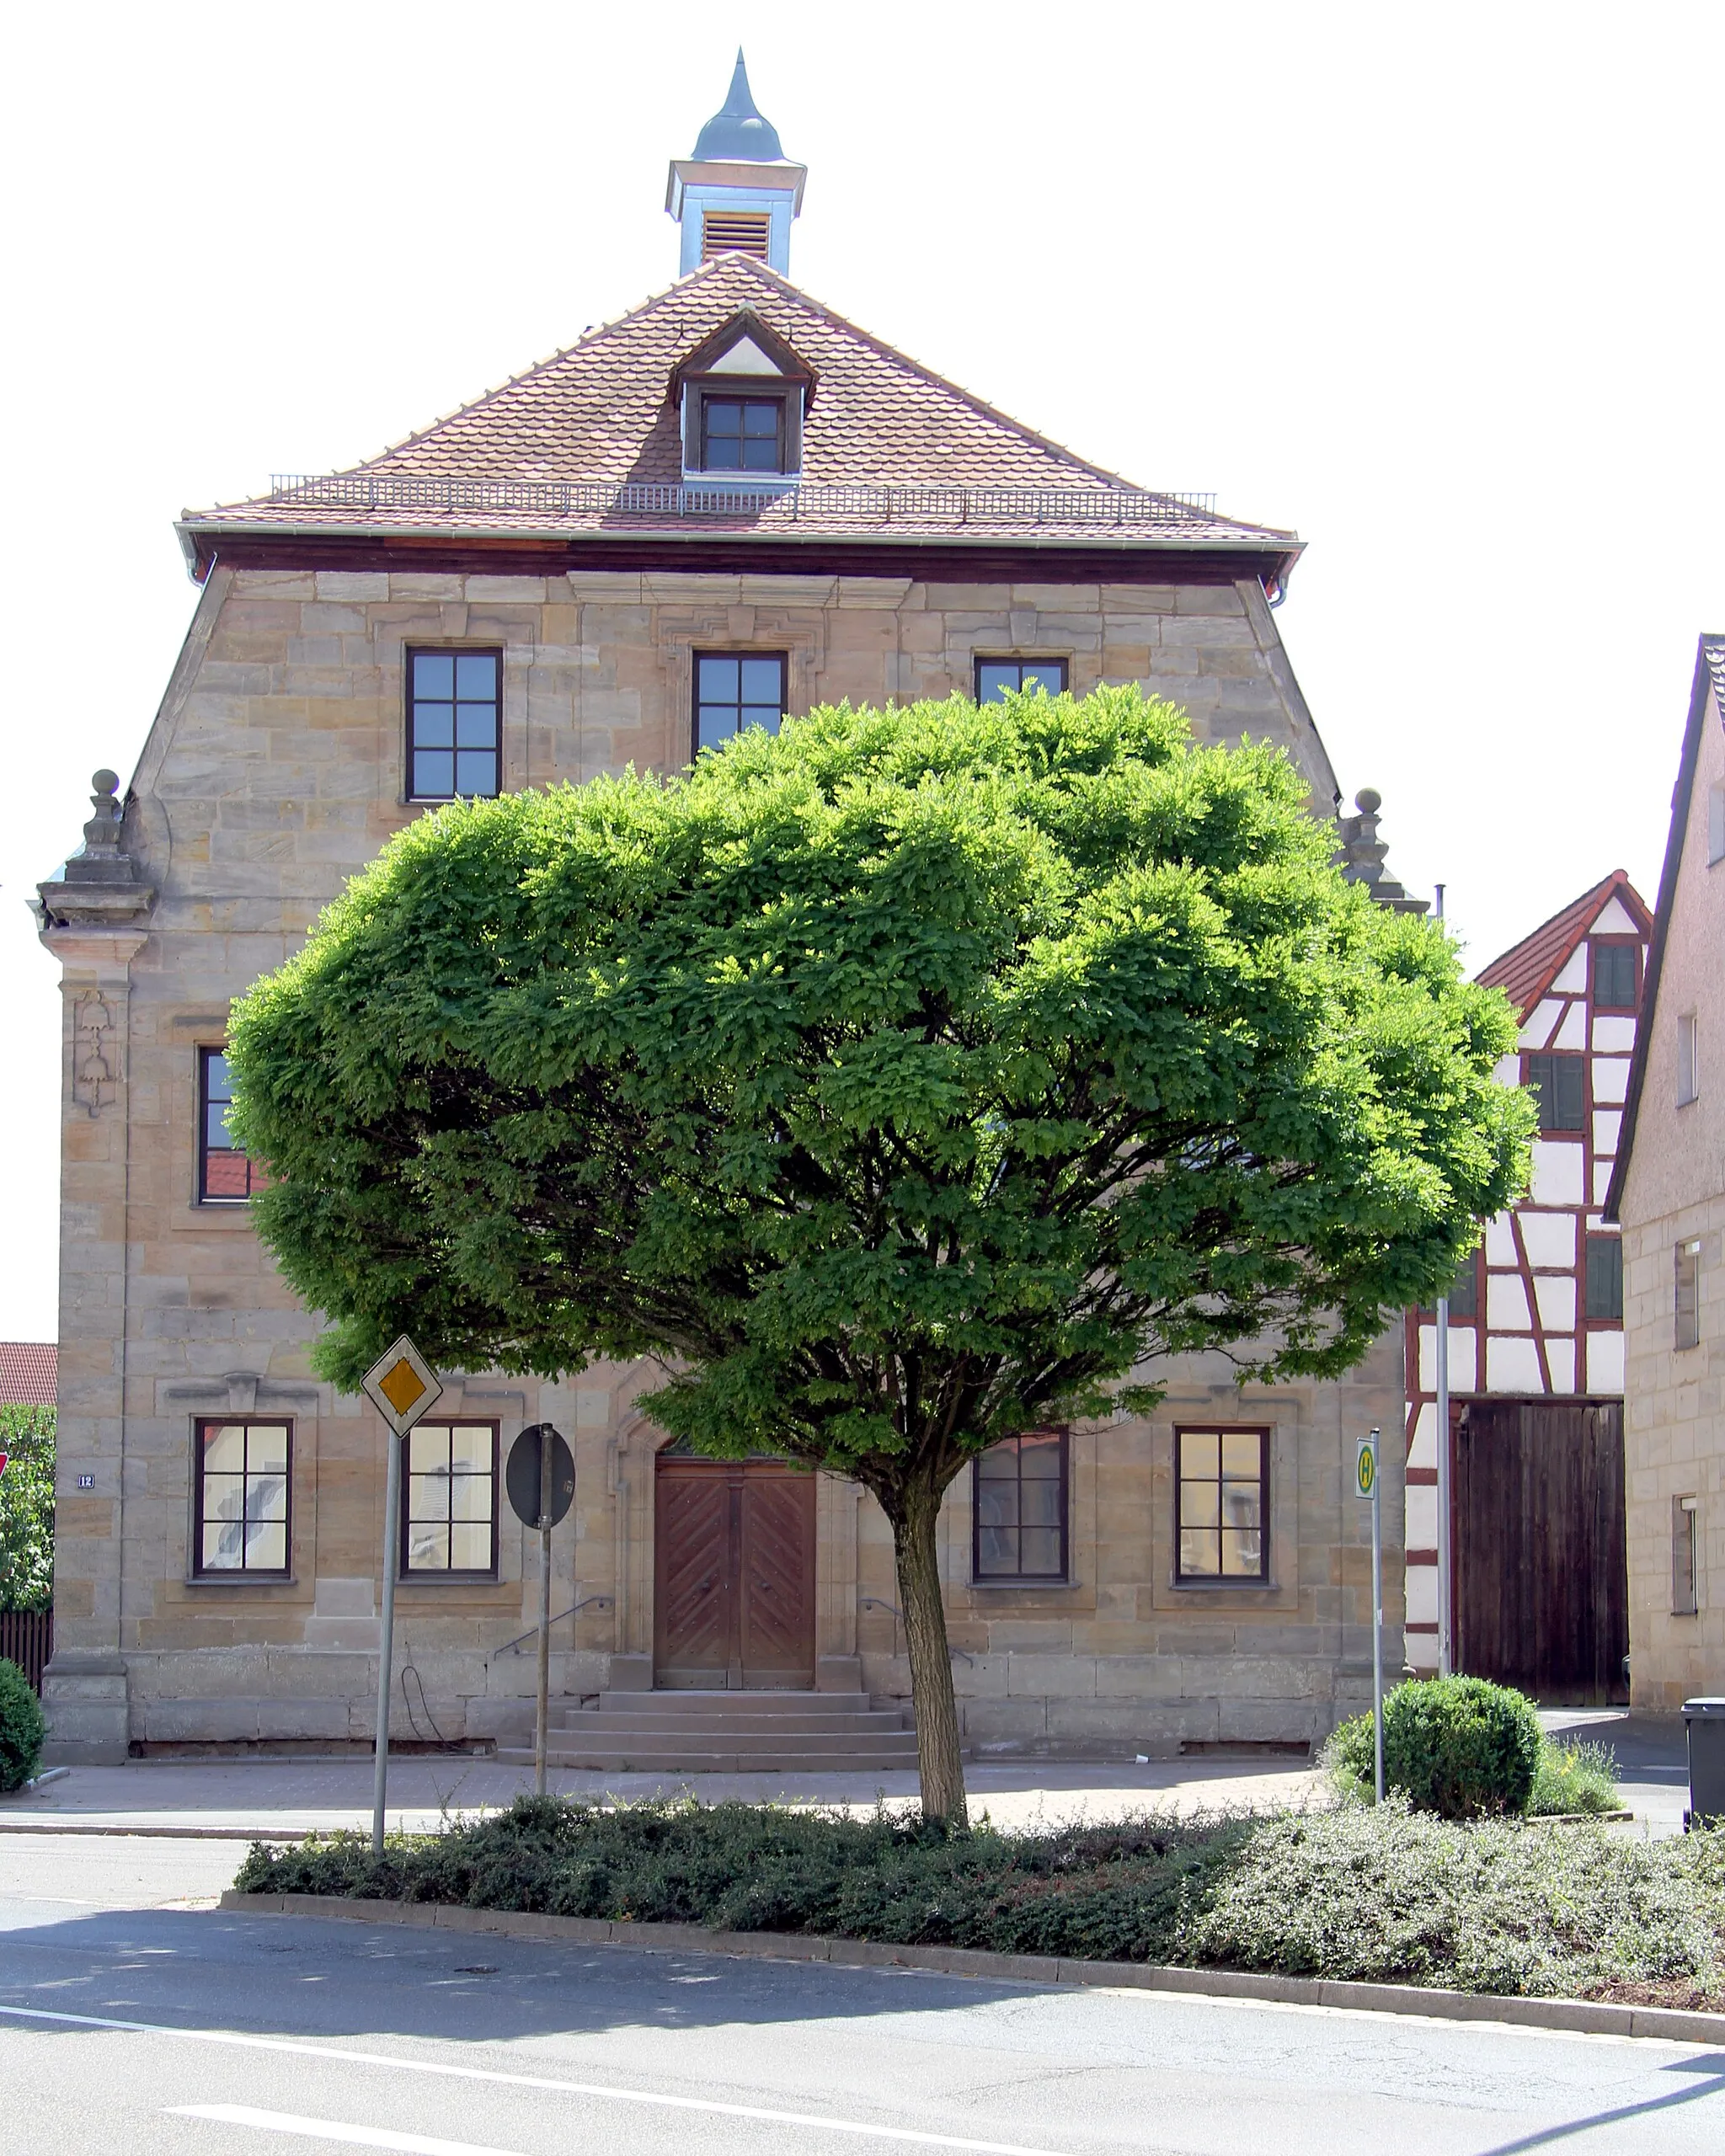 Photo showing: Ehemaliger Herrensitz, Brander Hauptstraße 12 in Eckental-Brand, Bayern; von vorne verdeckt, rechts im Hintergrund zugehörige Scheune